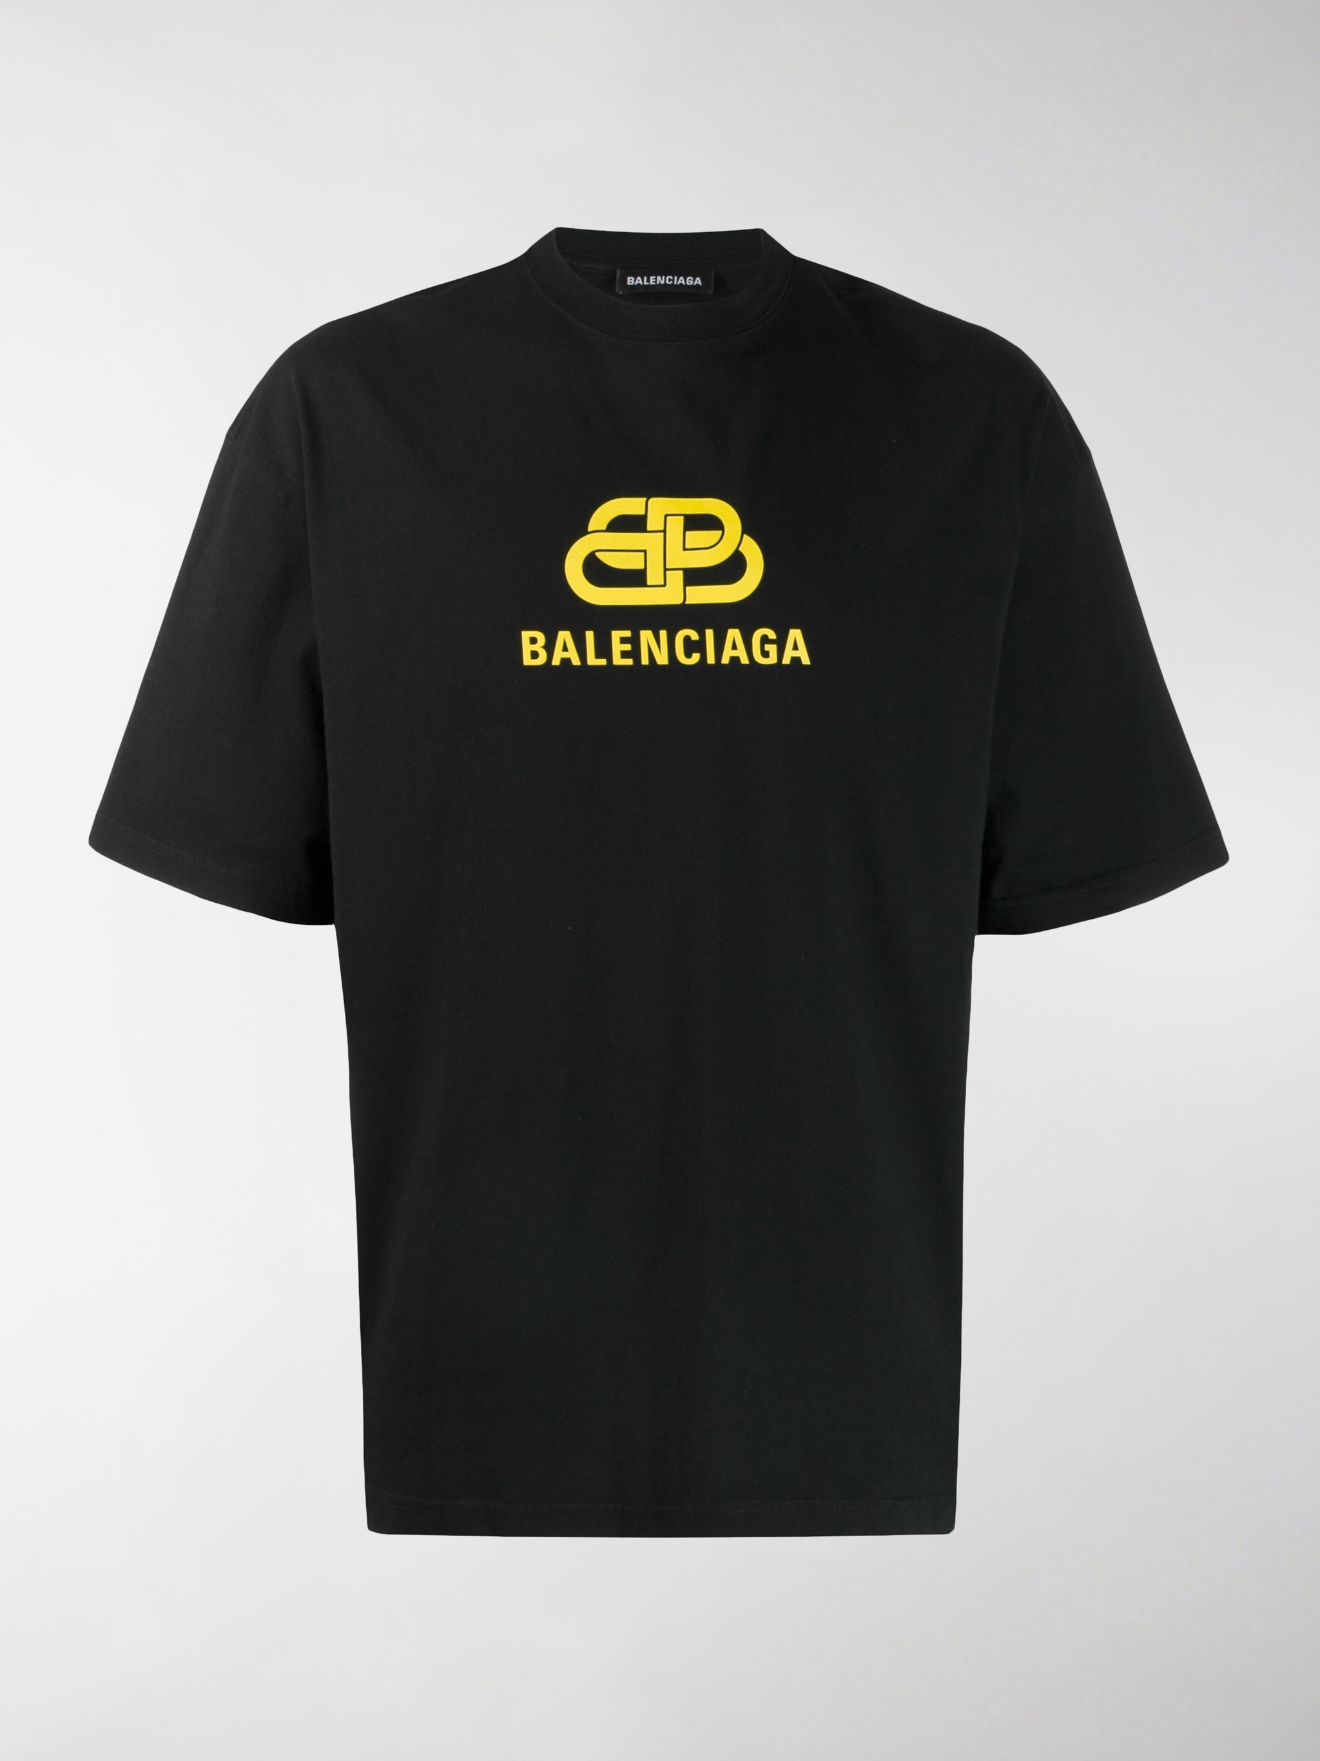 Balenciaga BB print T-shirt black | MODES